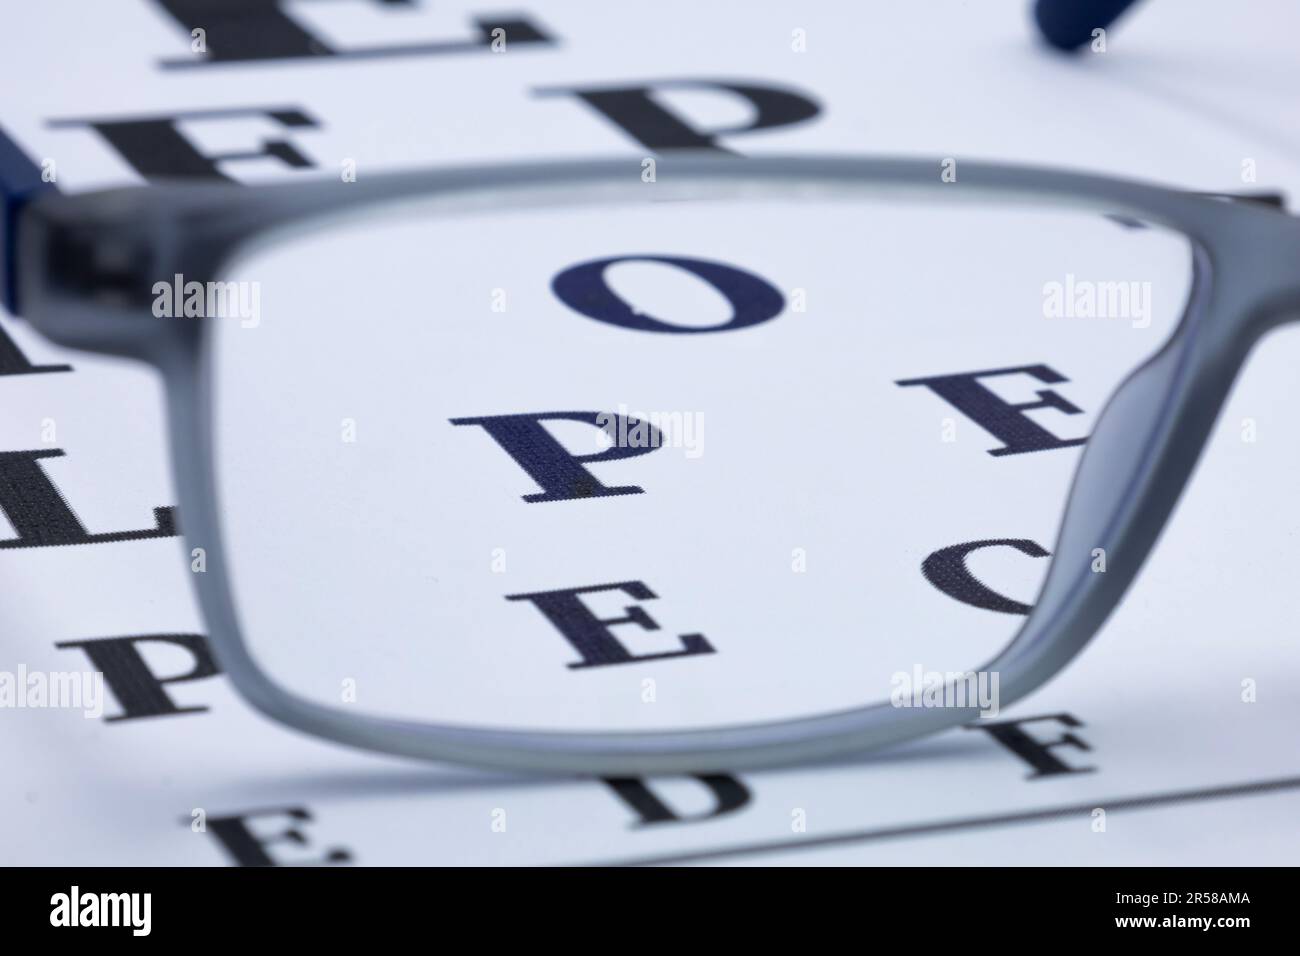 Eye glasses on eyesight test chart background close up Stock Photo